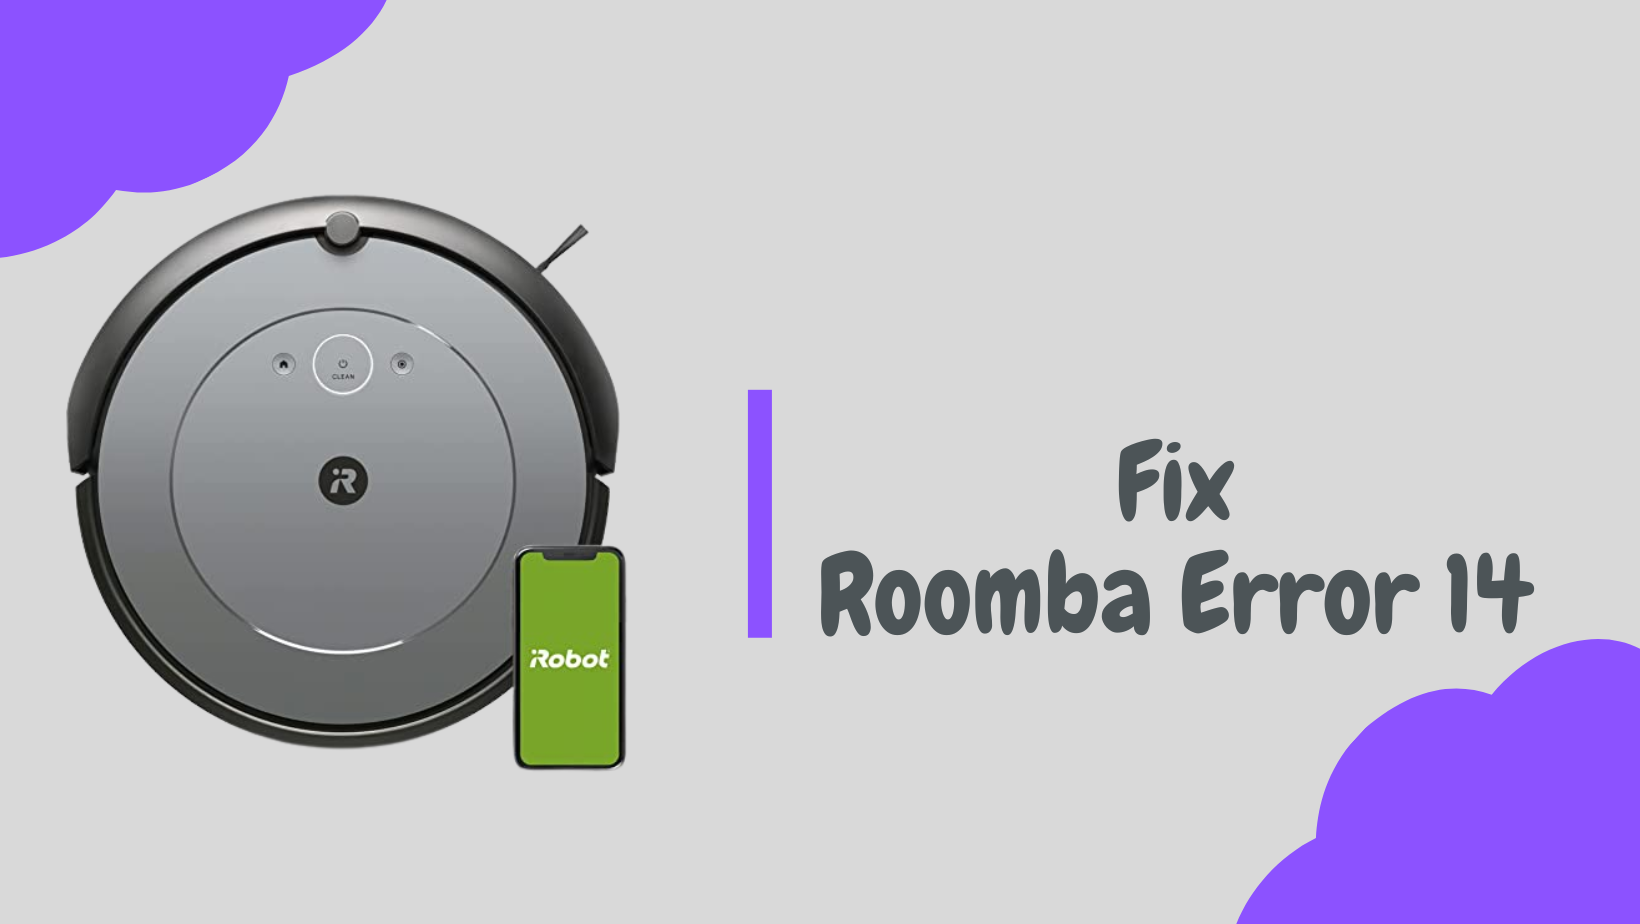 Roomba error 14